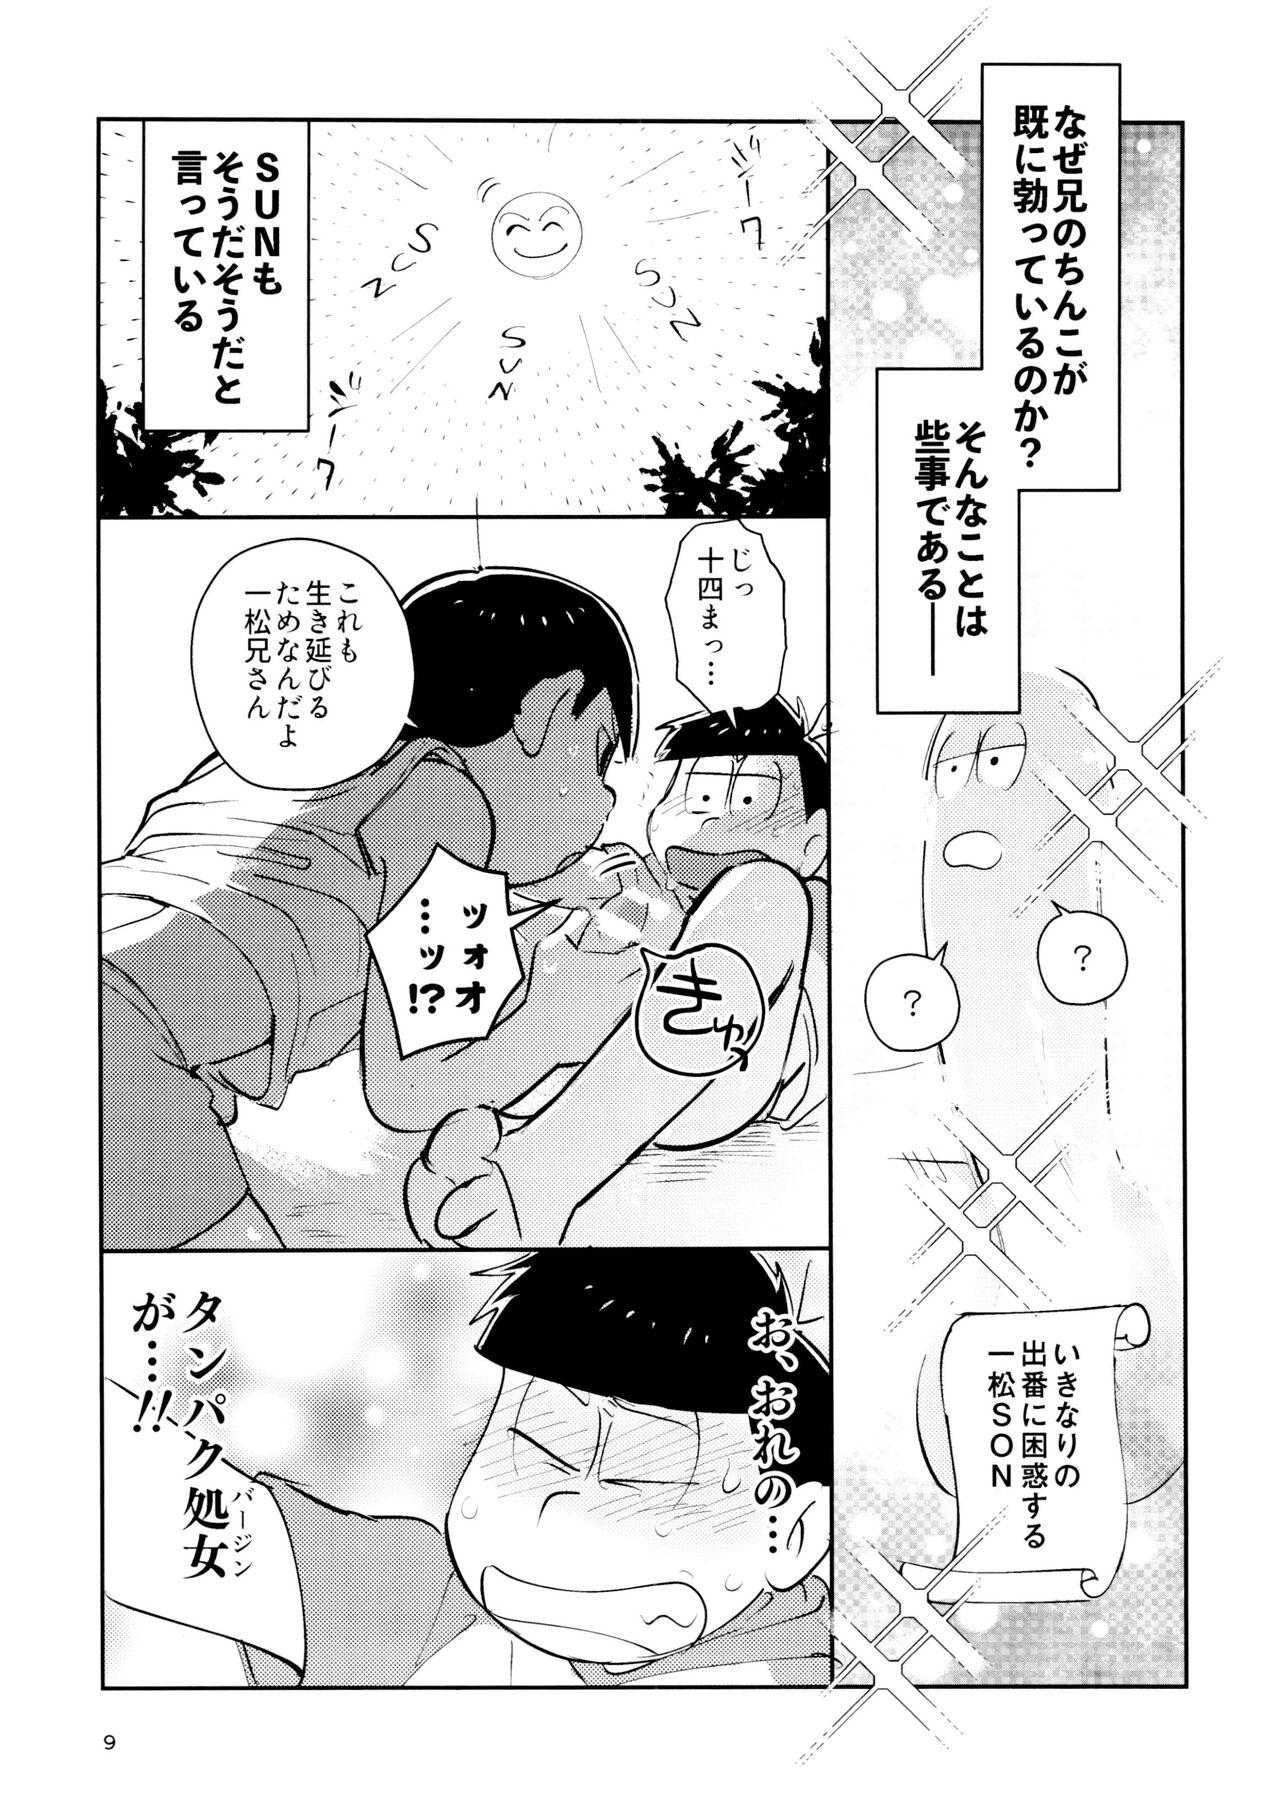 Ex Girlfriend Zatsu Shinkiro's - Osomatsu san Twistys - Page 9